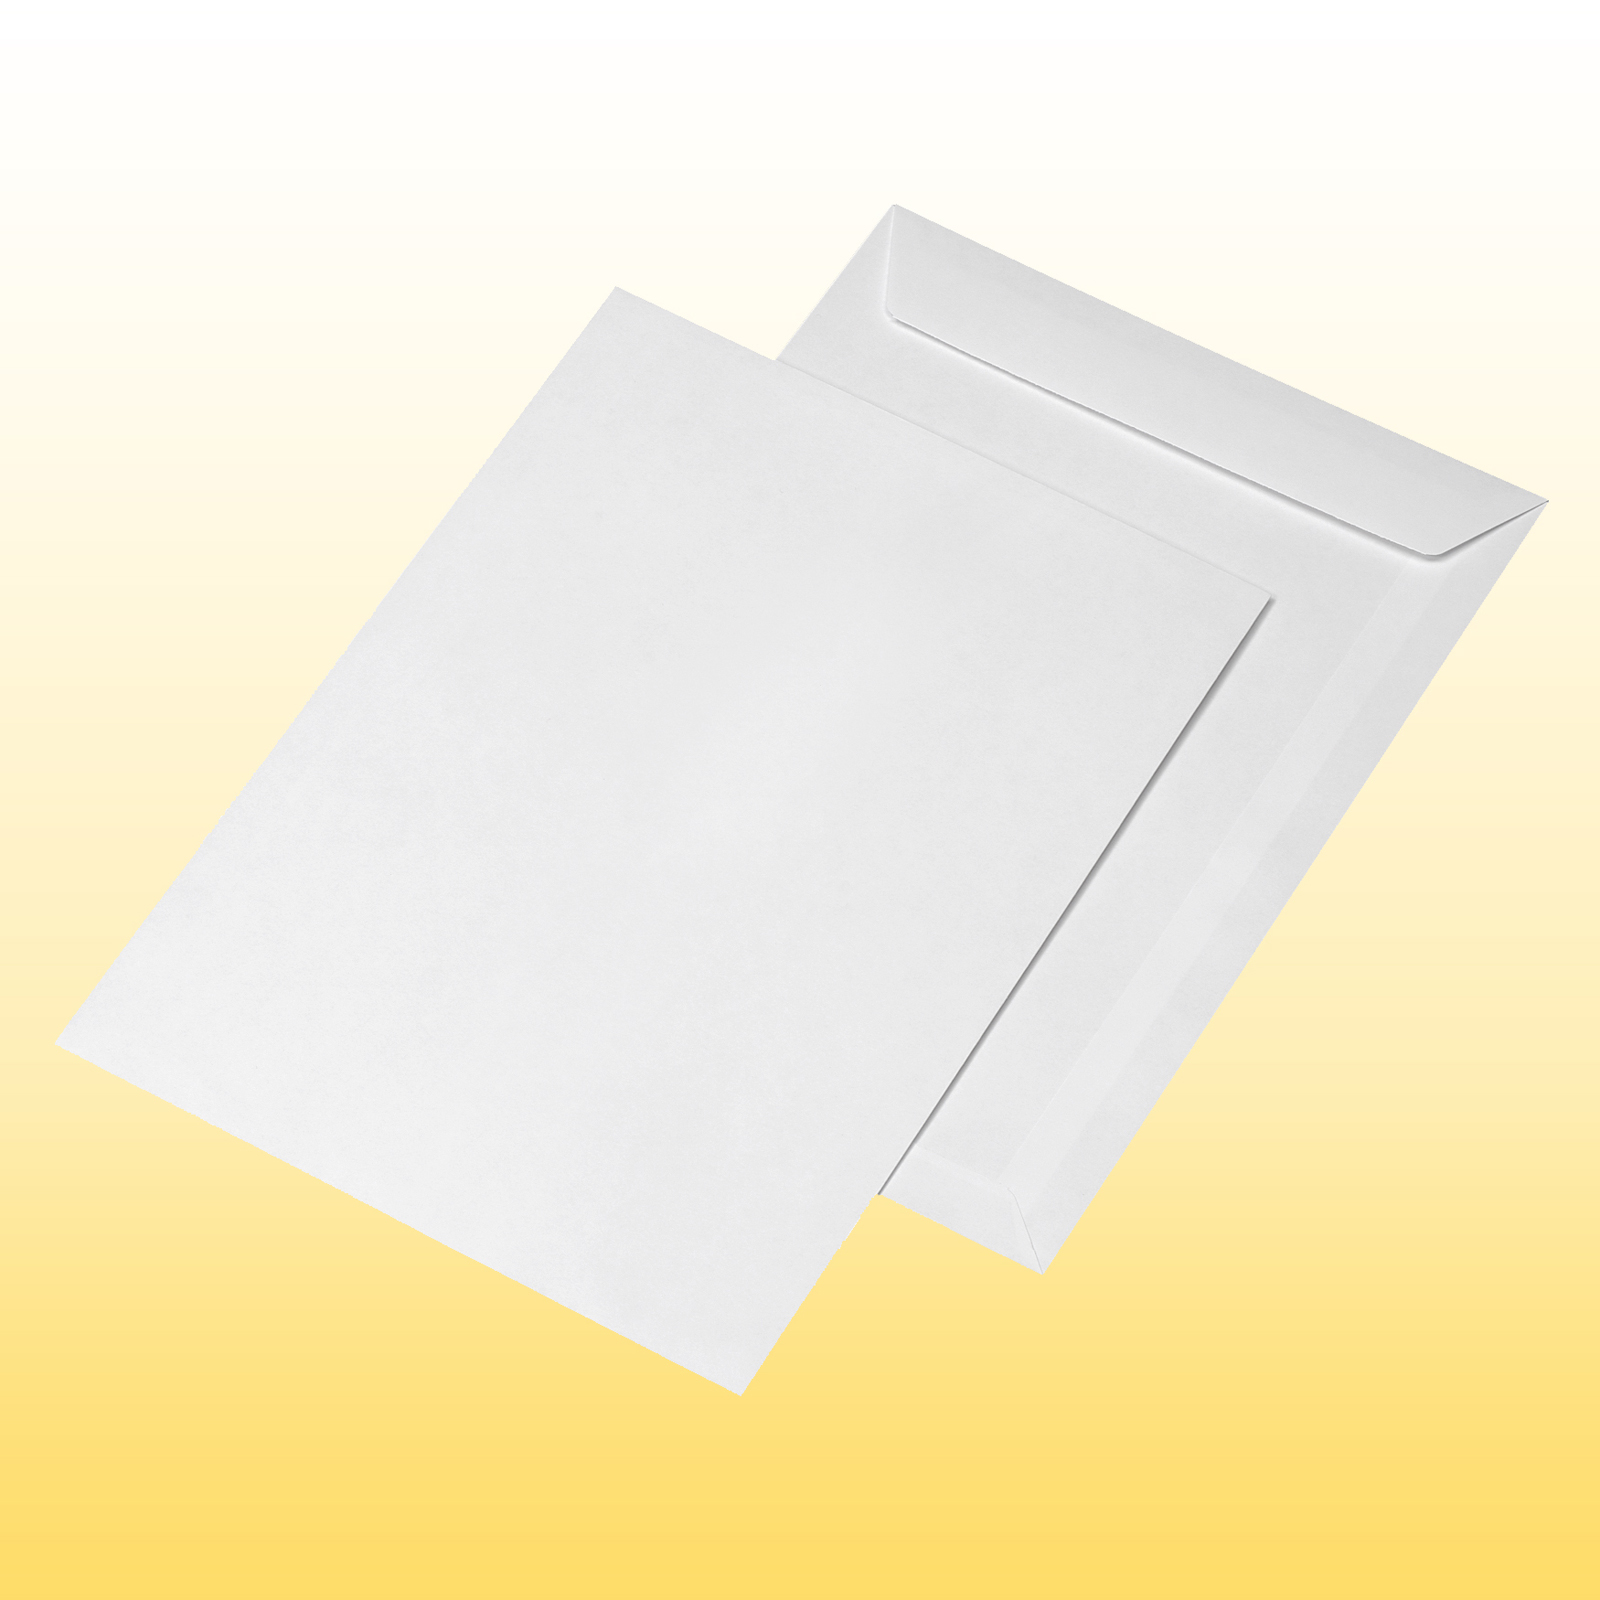 haftklebend weiß 90g/m² 166 250 x 353mm 250 Briefumschläge Versandtaschen B4 